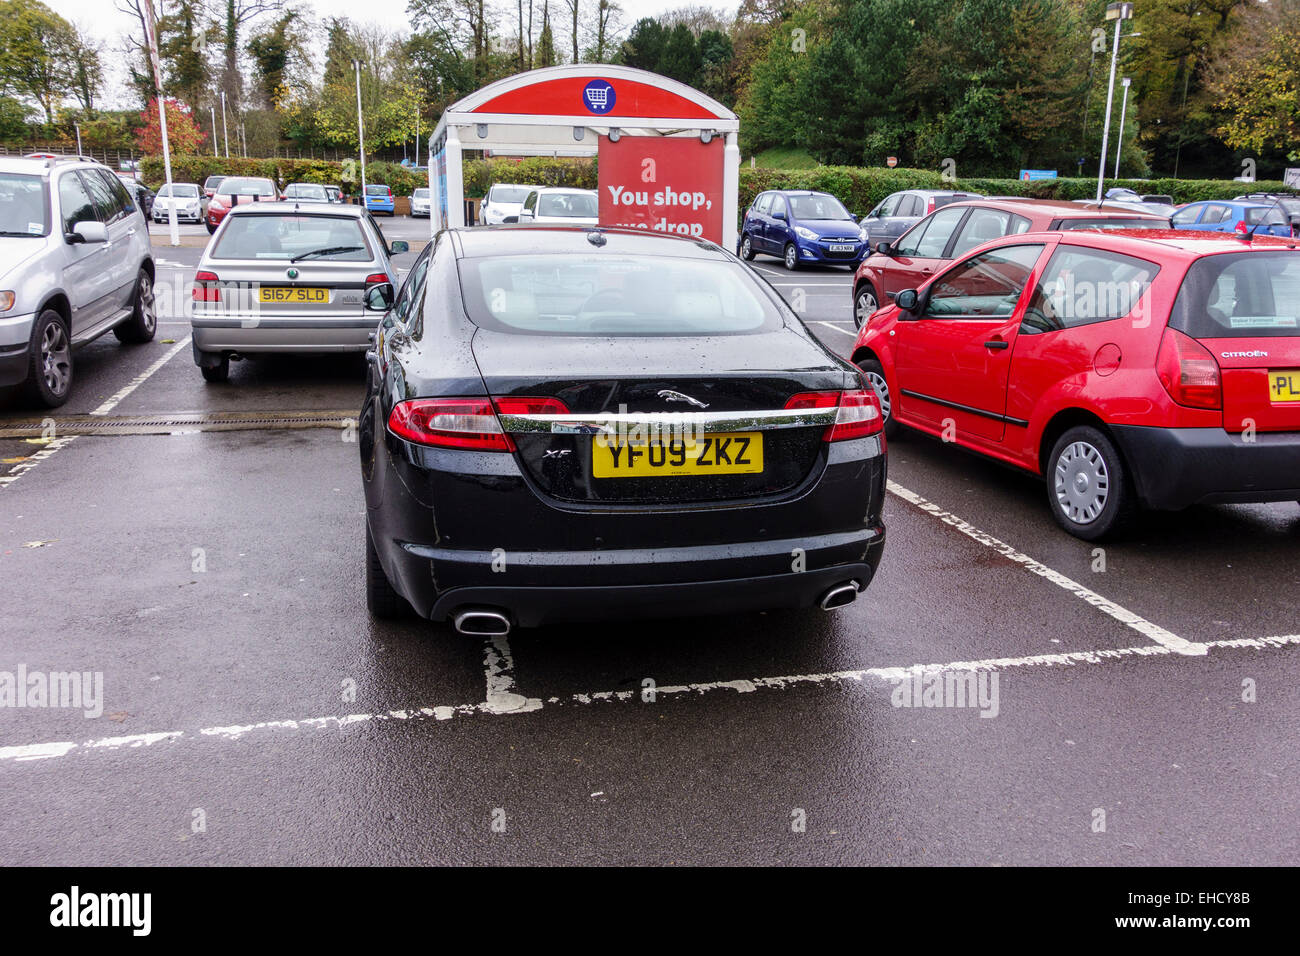 Rücksichtslose Parken auf einem Supermarkt-Parkplatz, UK. DAS GLEICHE BILD  OHNE NUMMERNSCHILD STEHT ZUR VERFÜGUNG. (Siehe Bild-Ref: EHCY8E  Stockfotografie - Alamy